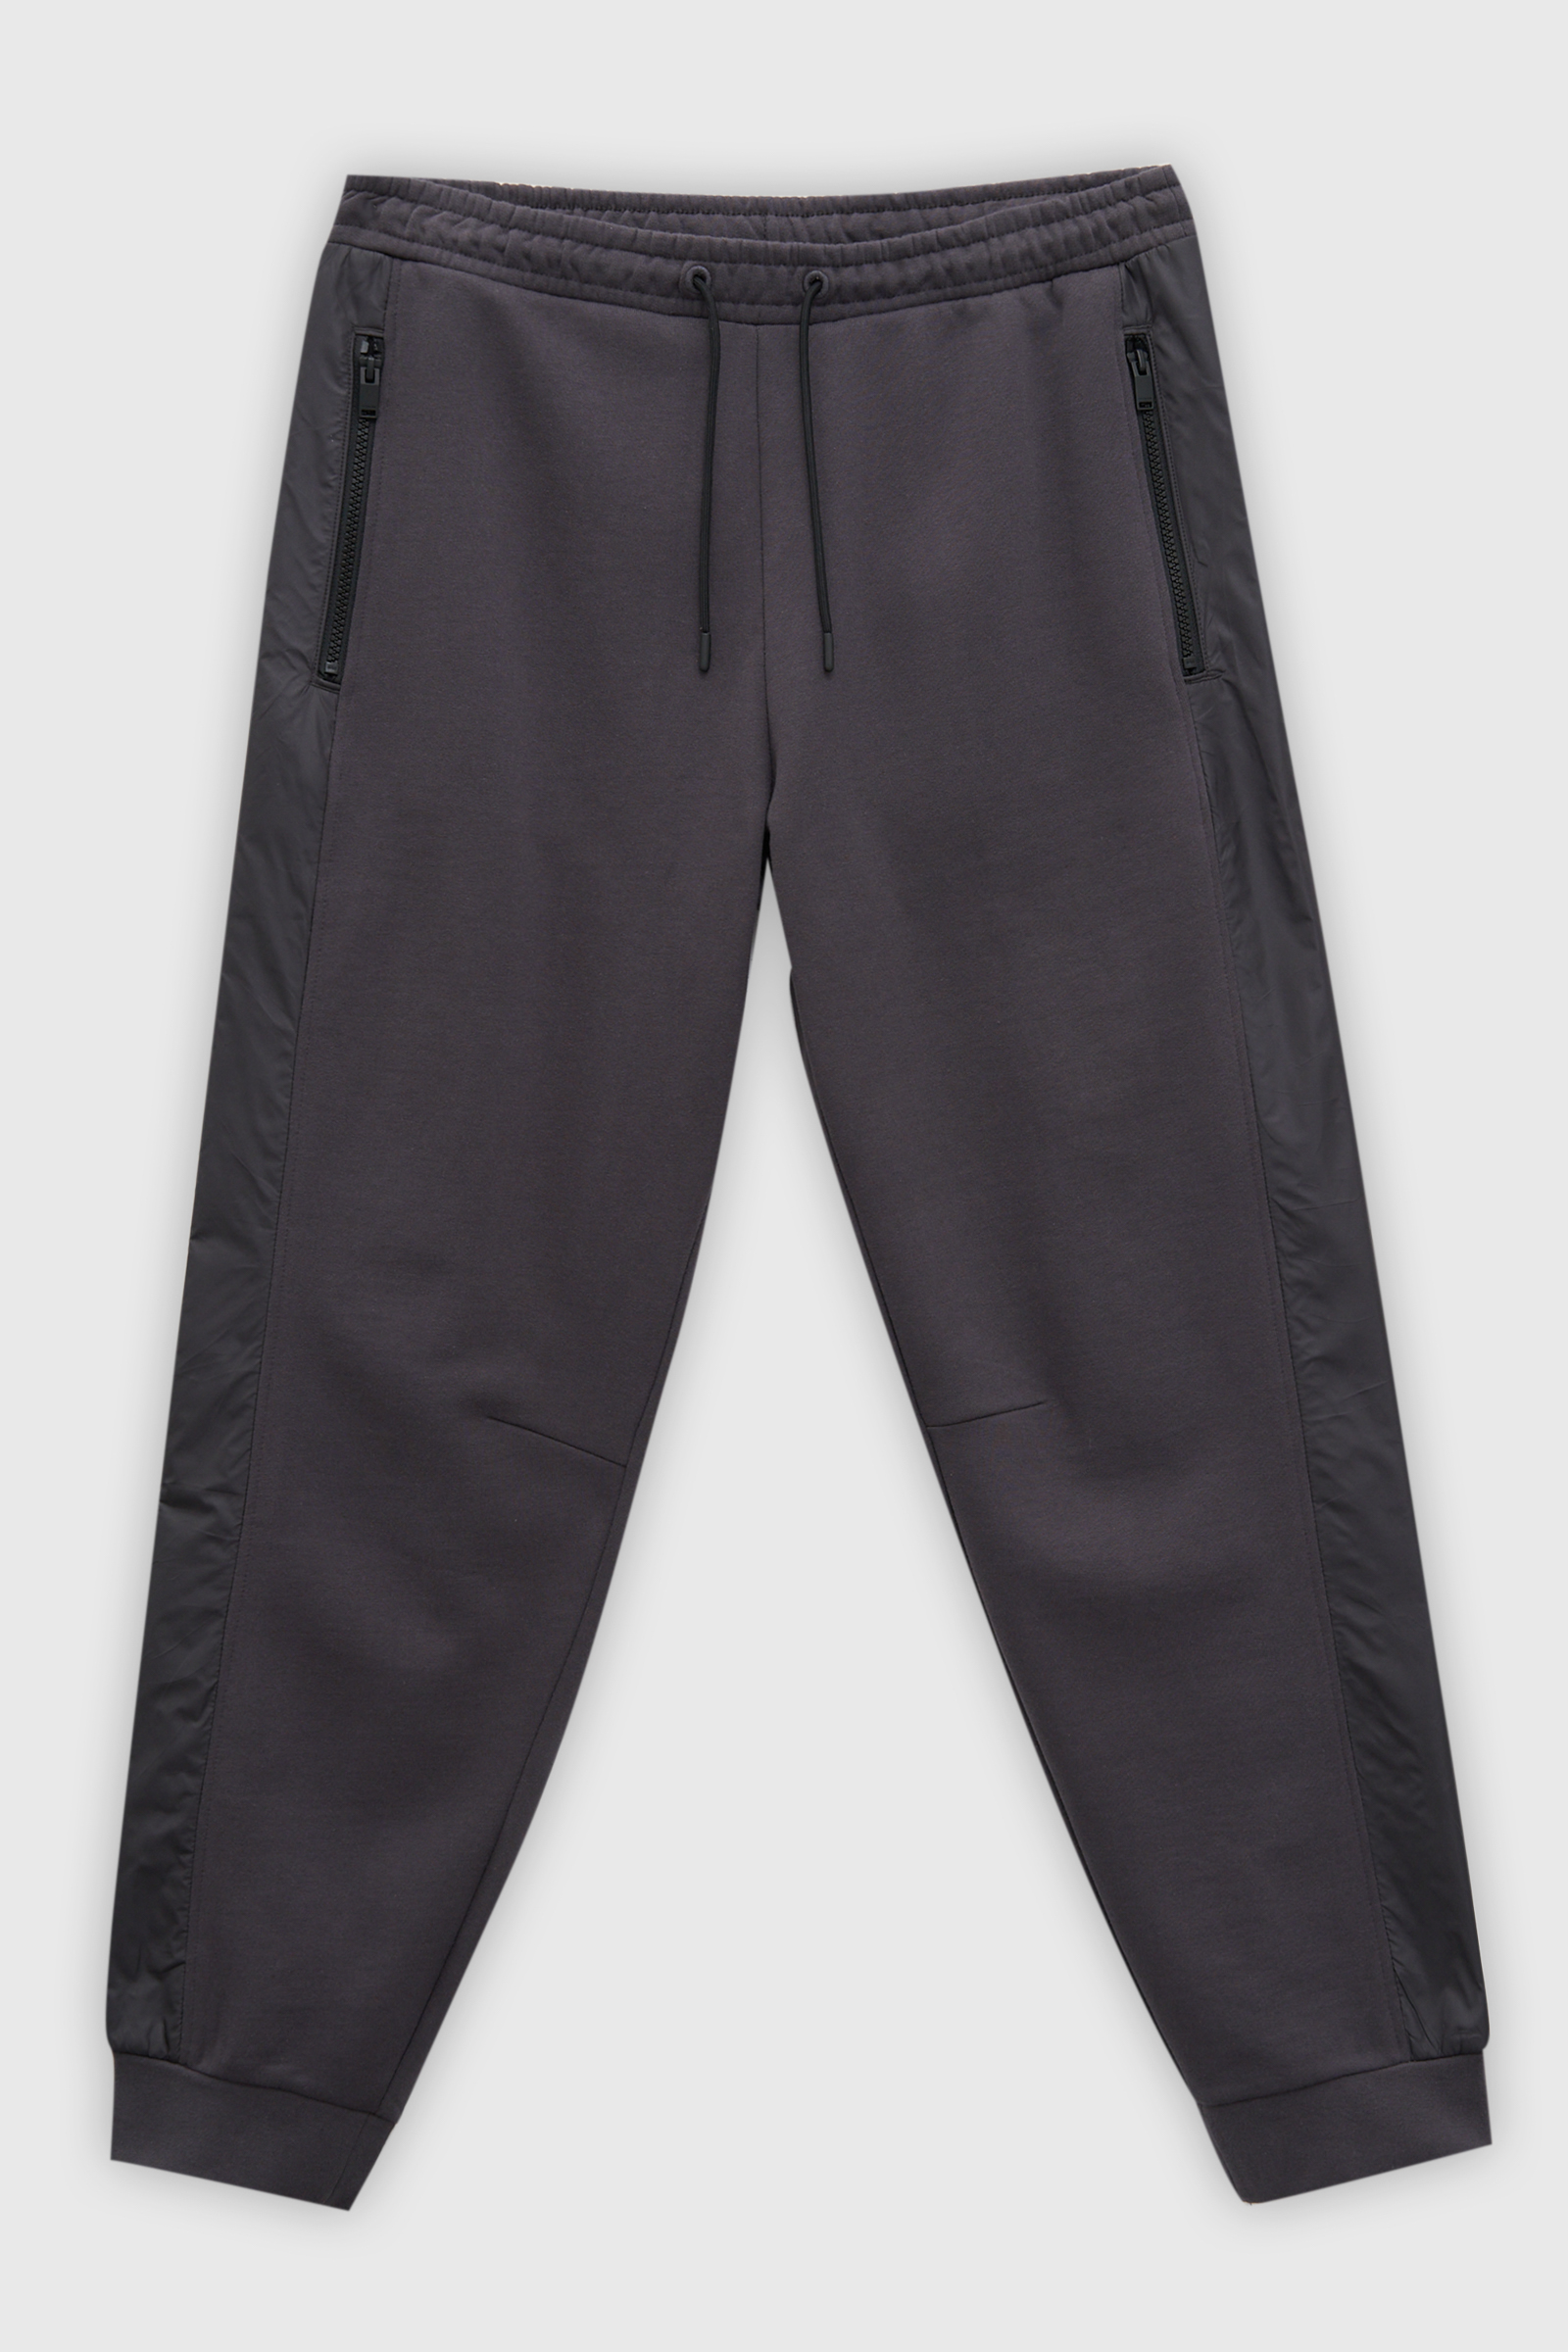 Спортивные брюки мужские Finn Flare FAD21030 серые 2XL